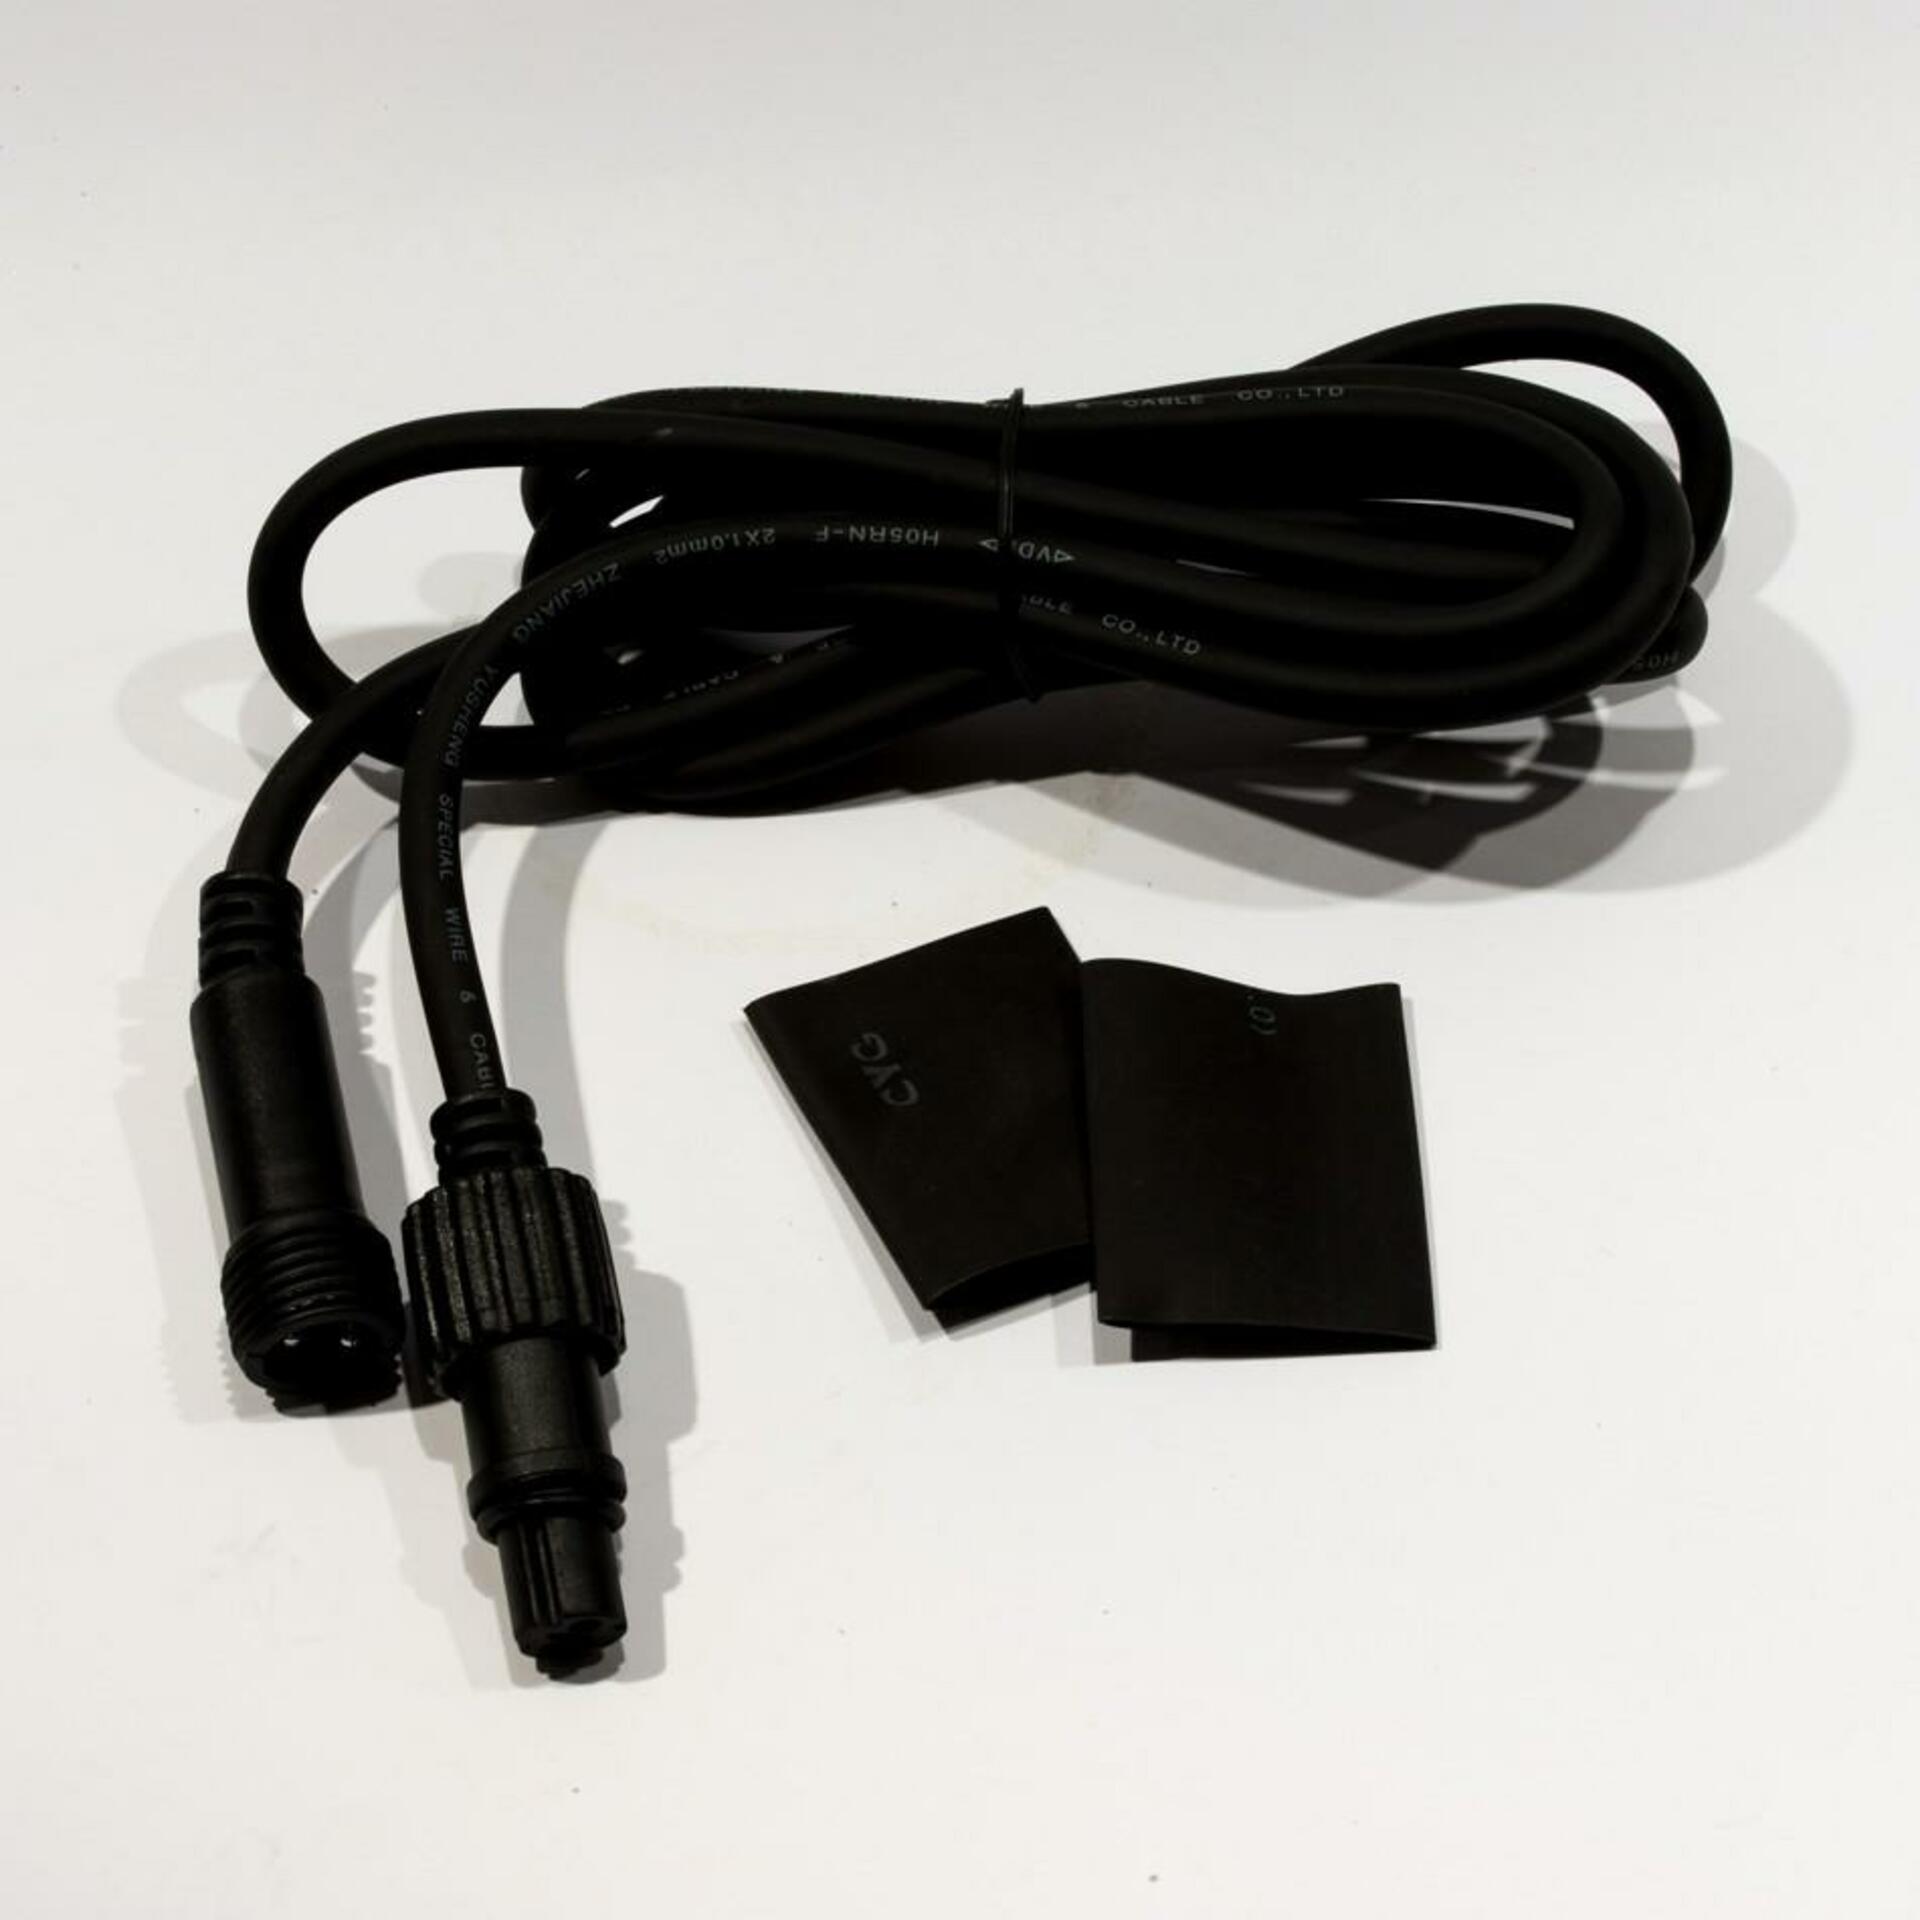 DecoLED Prodlužovací kabel - černý, 2m EFX12